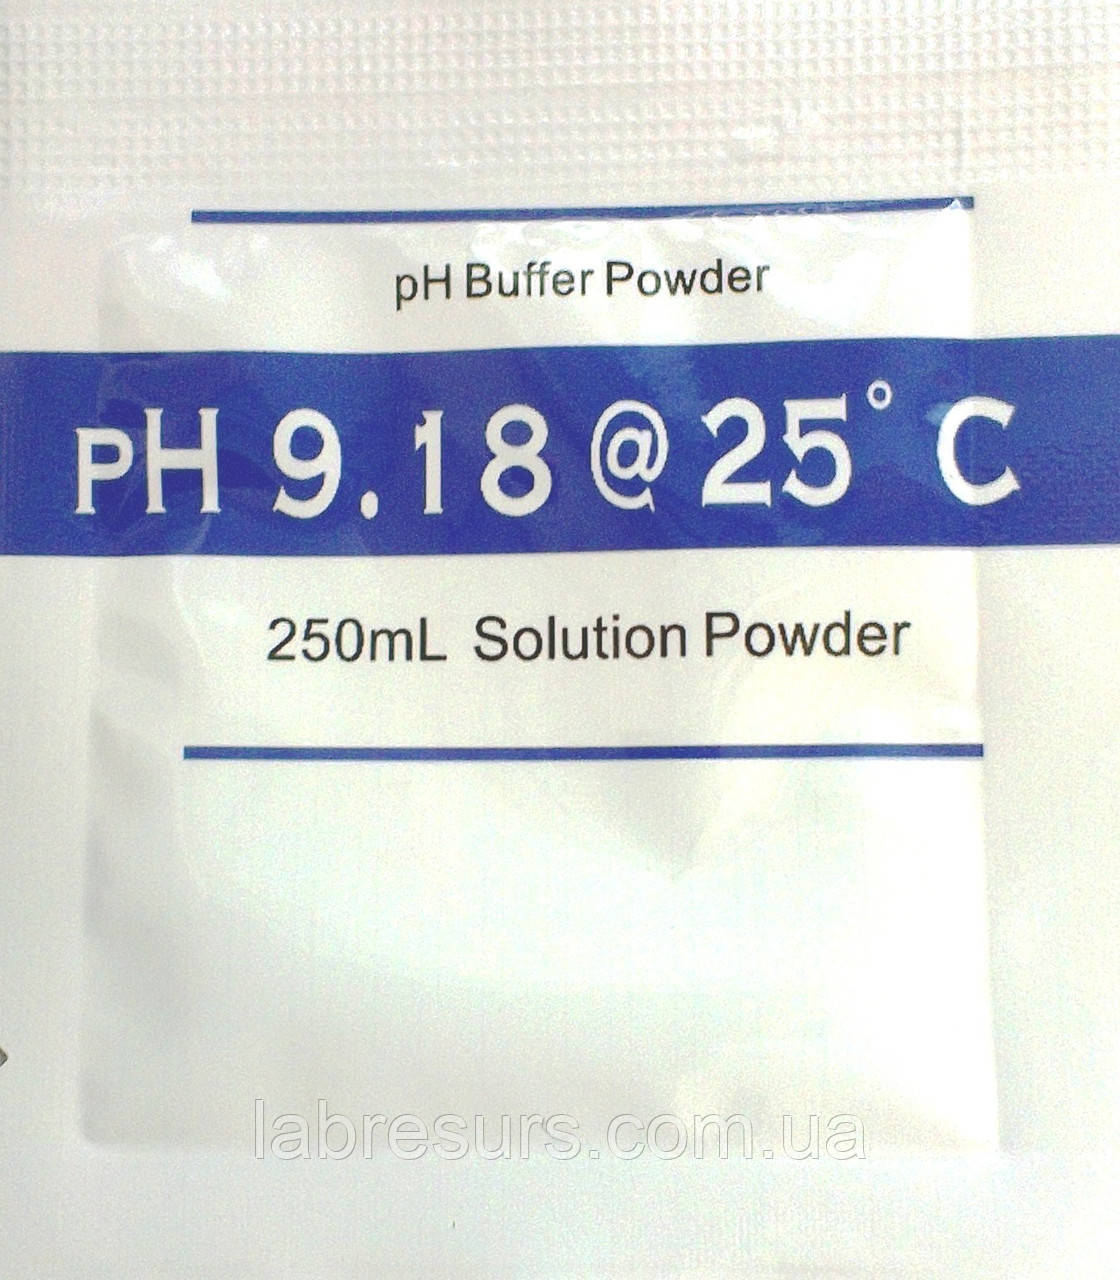 Калібрувальний розчин для ph метра — pH 9.18 ( стандарт-титр) Порошок на 250 мл